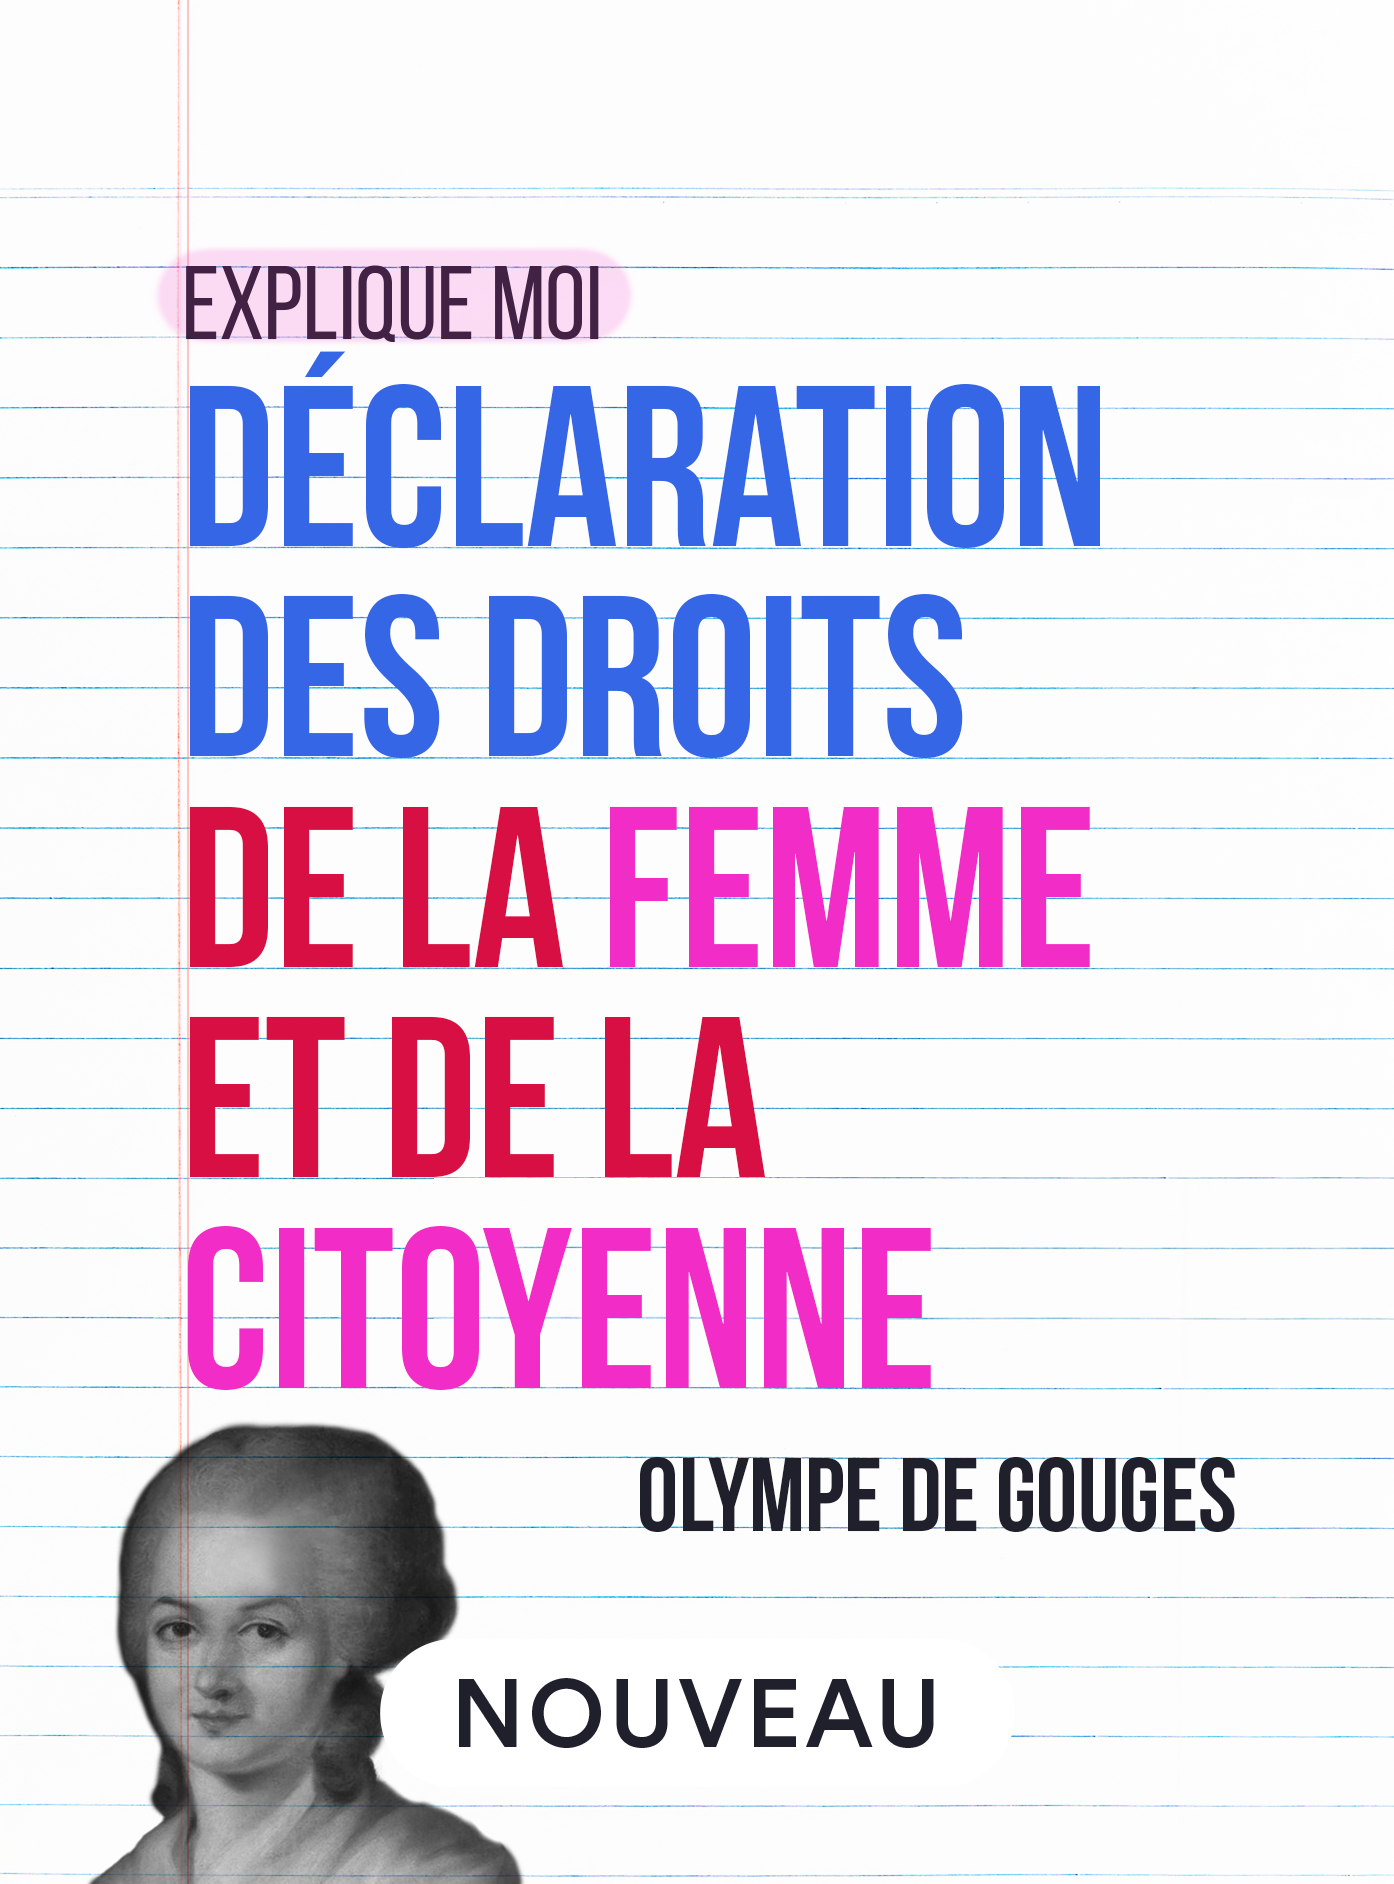 Olympe de Gouges, Déclaration des droits de la femme et de la citoyenne